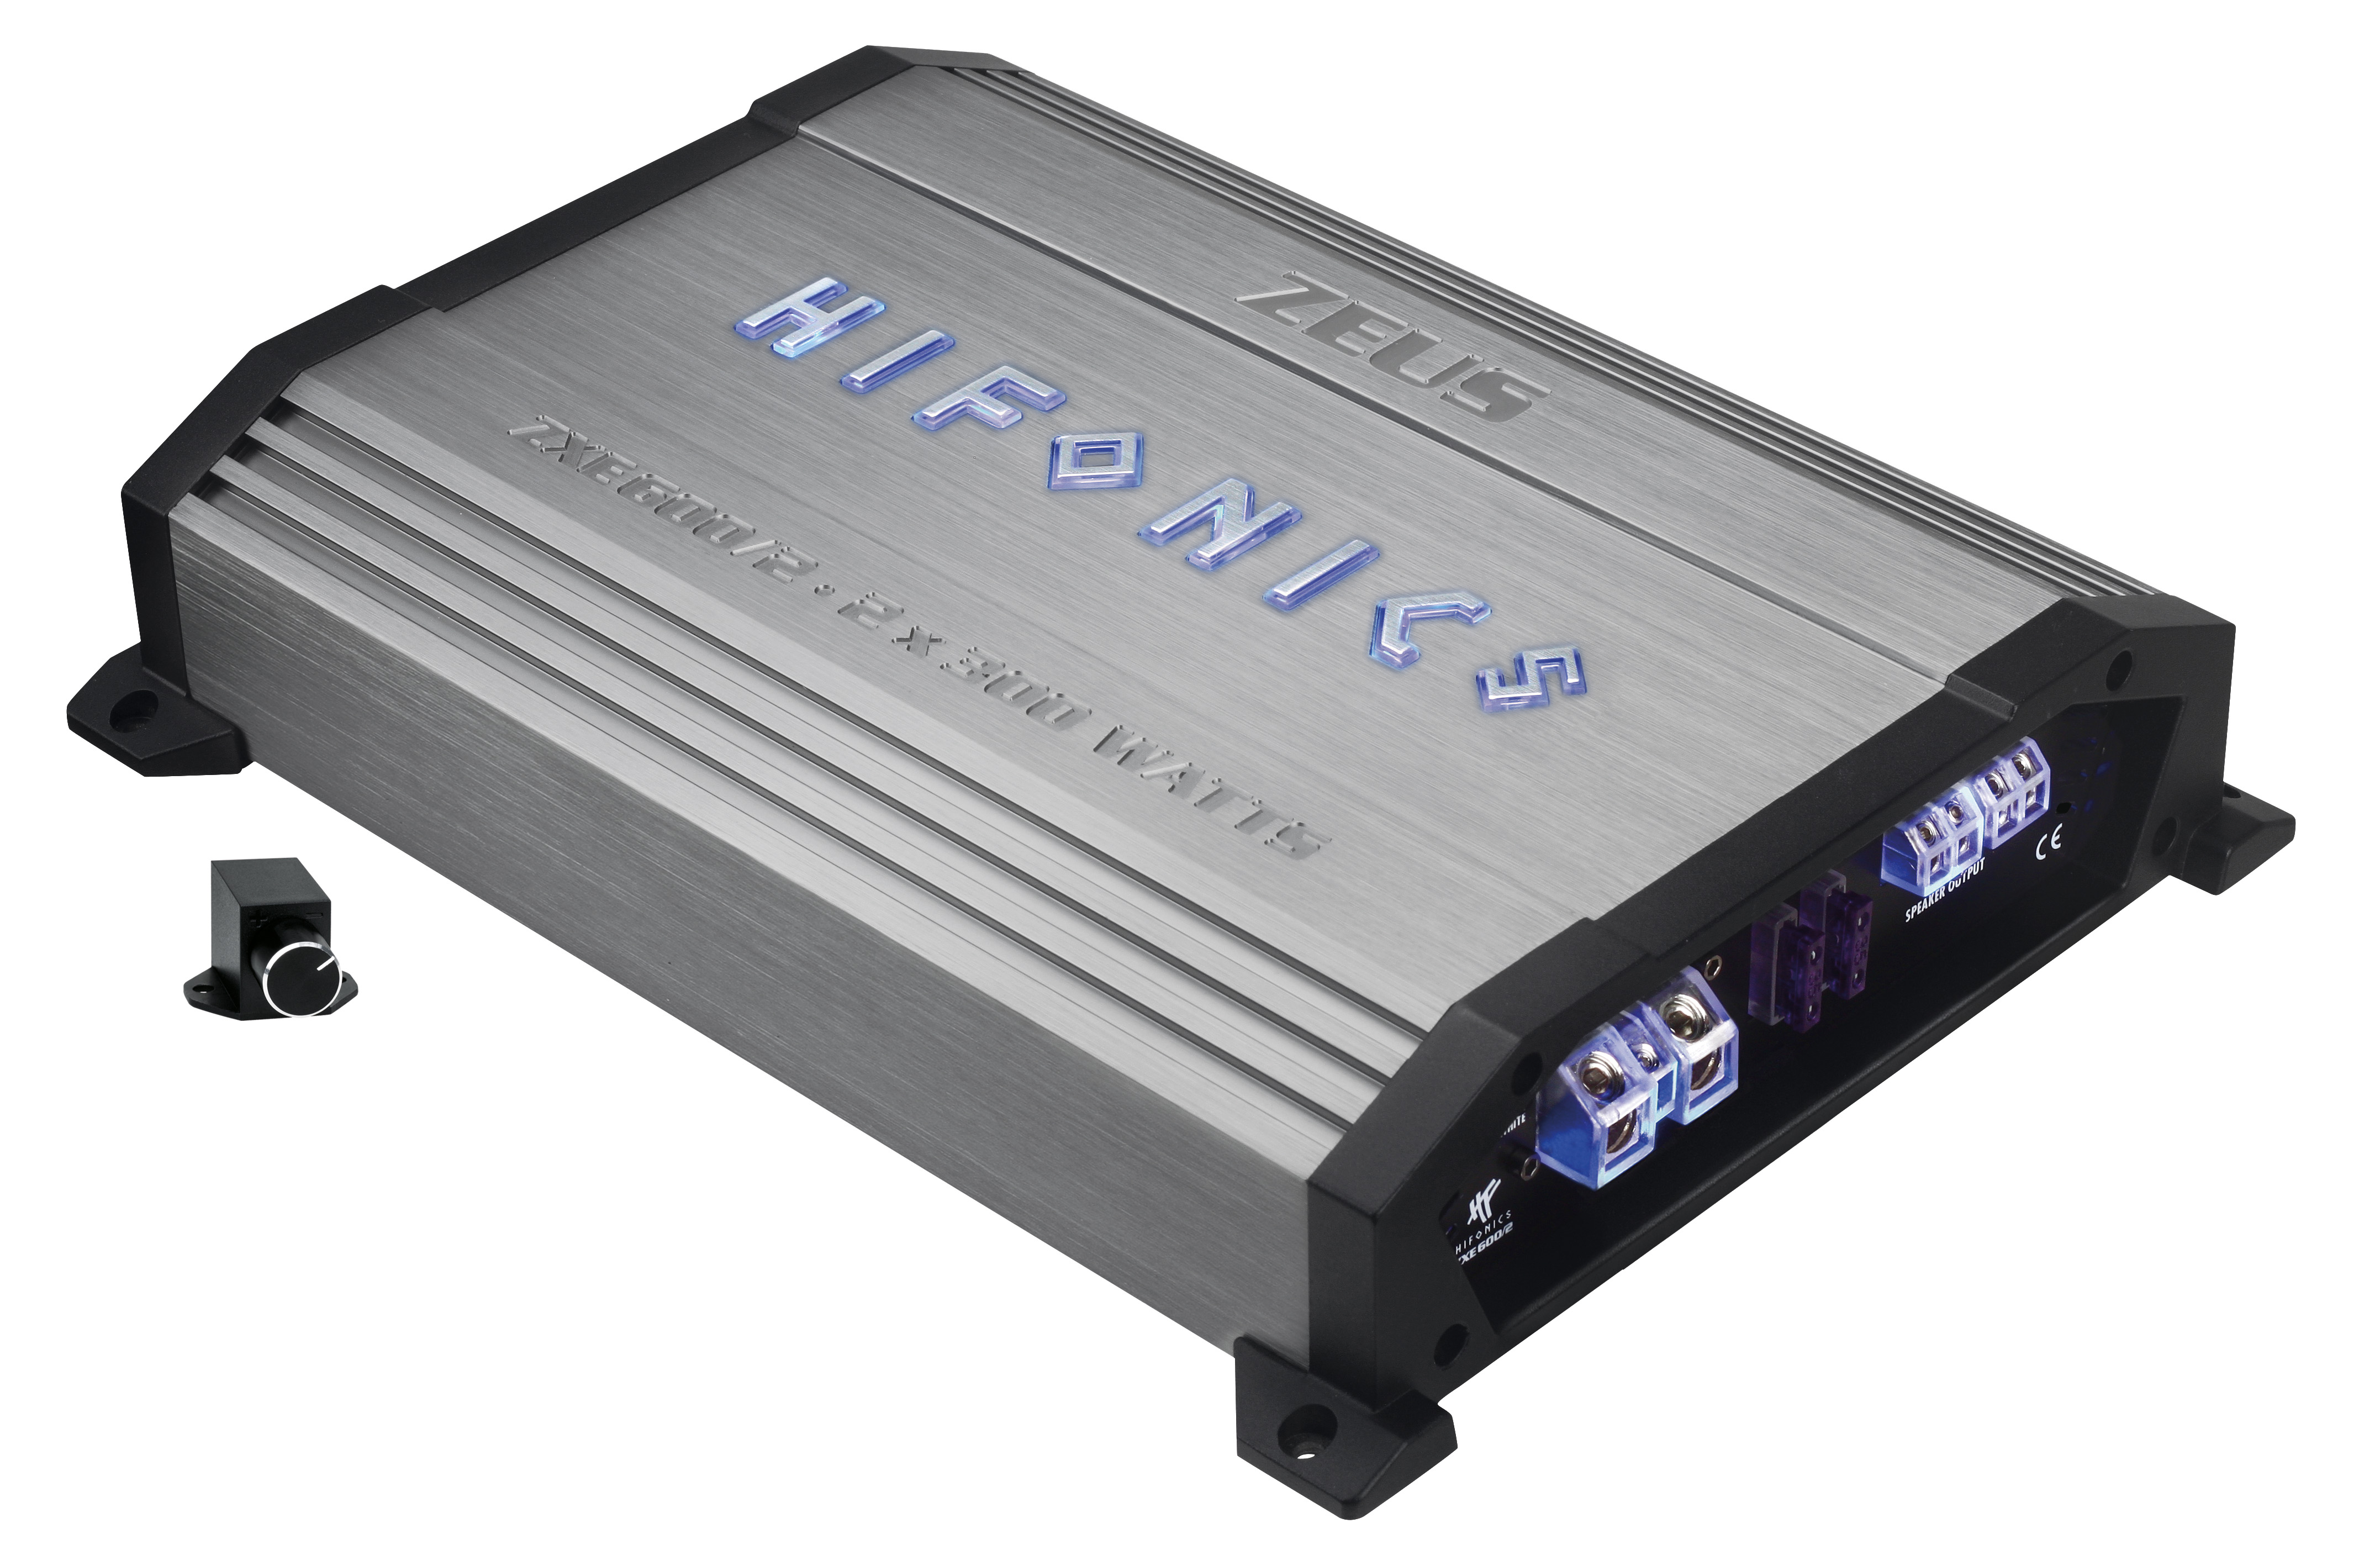 Hifonics ZXE 600/2 2-Kanal Class-AB Verstärker 600 Watt RMS inkl. Bass-Remote